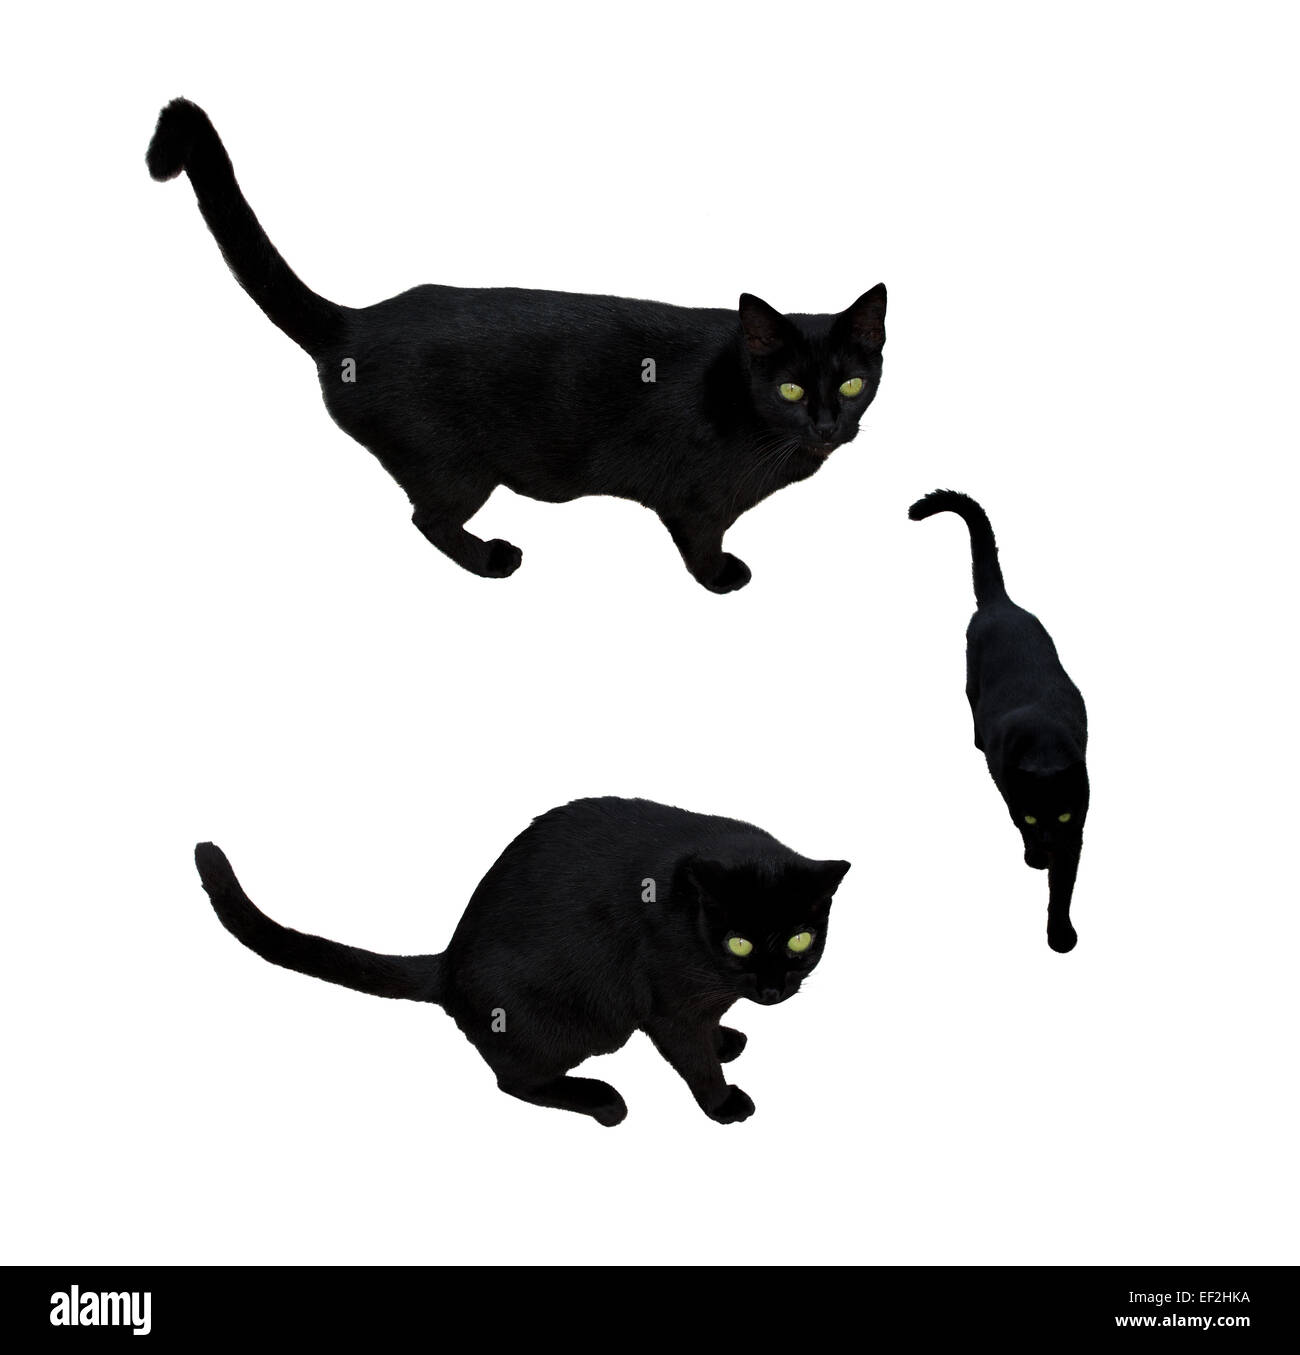 Schwarze Katze mit grünen Augen in drei Positionen, zu Fuß, auf der Suche, isoliert auf weiss. Stockfoto